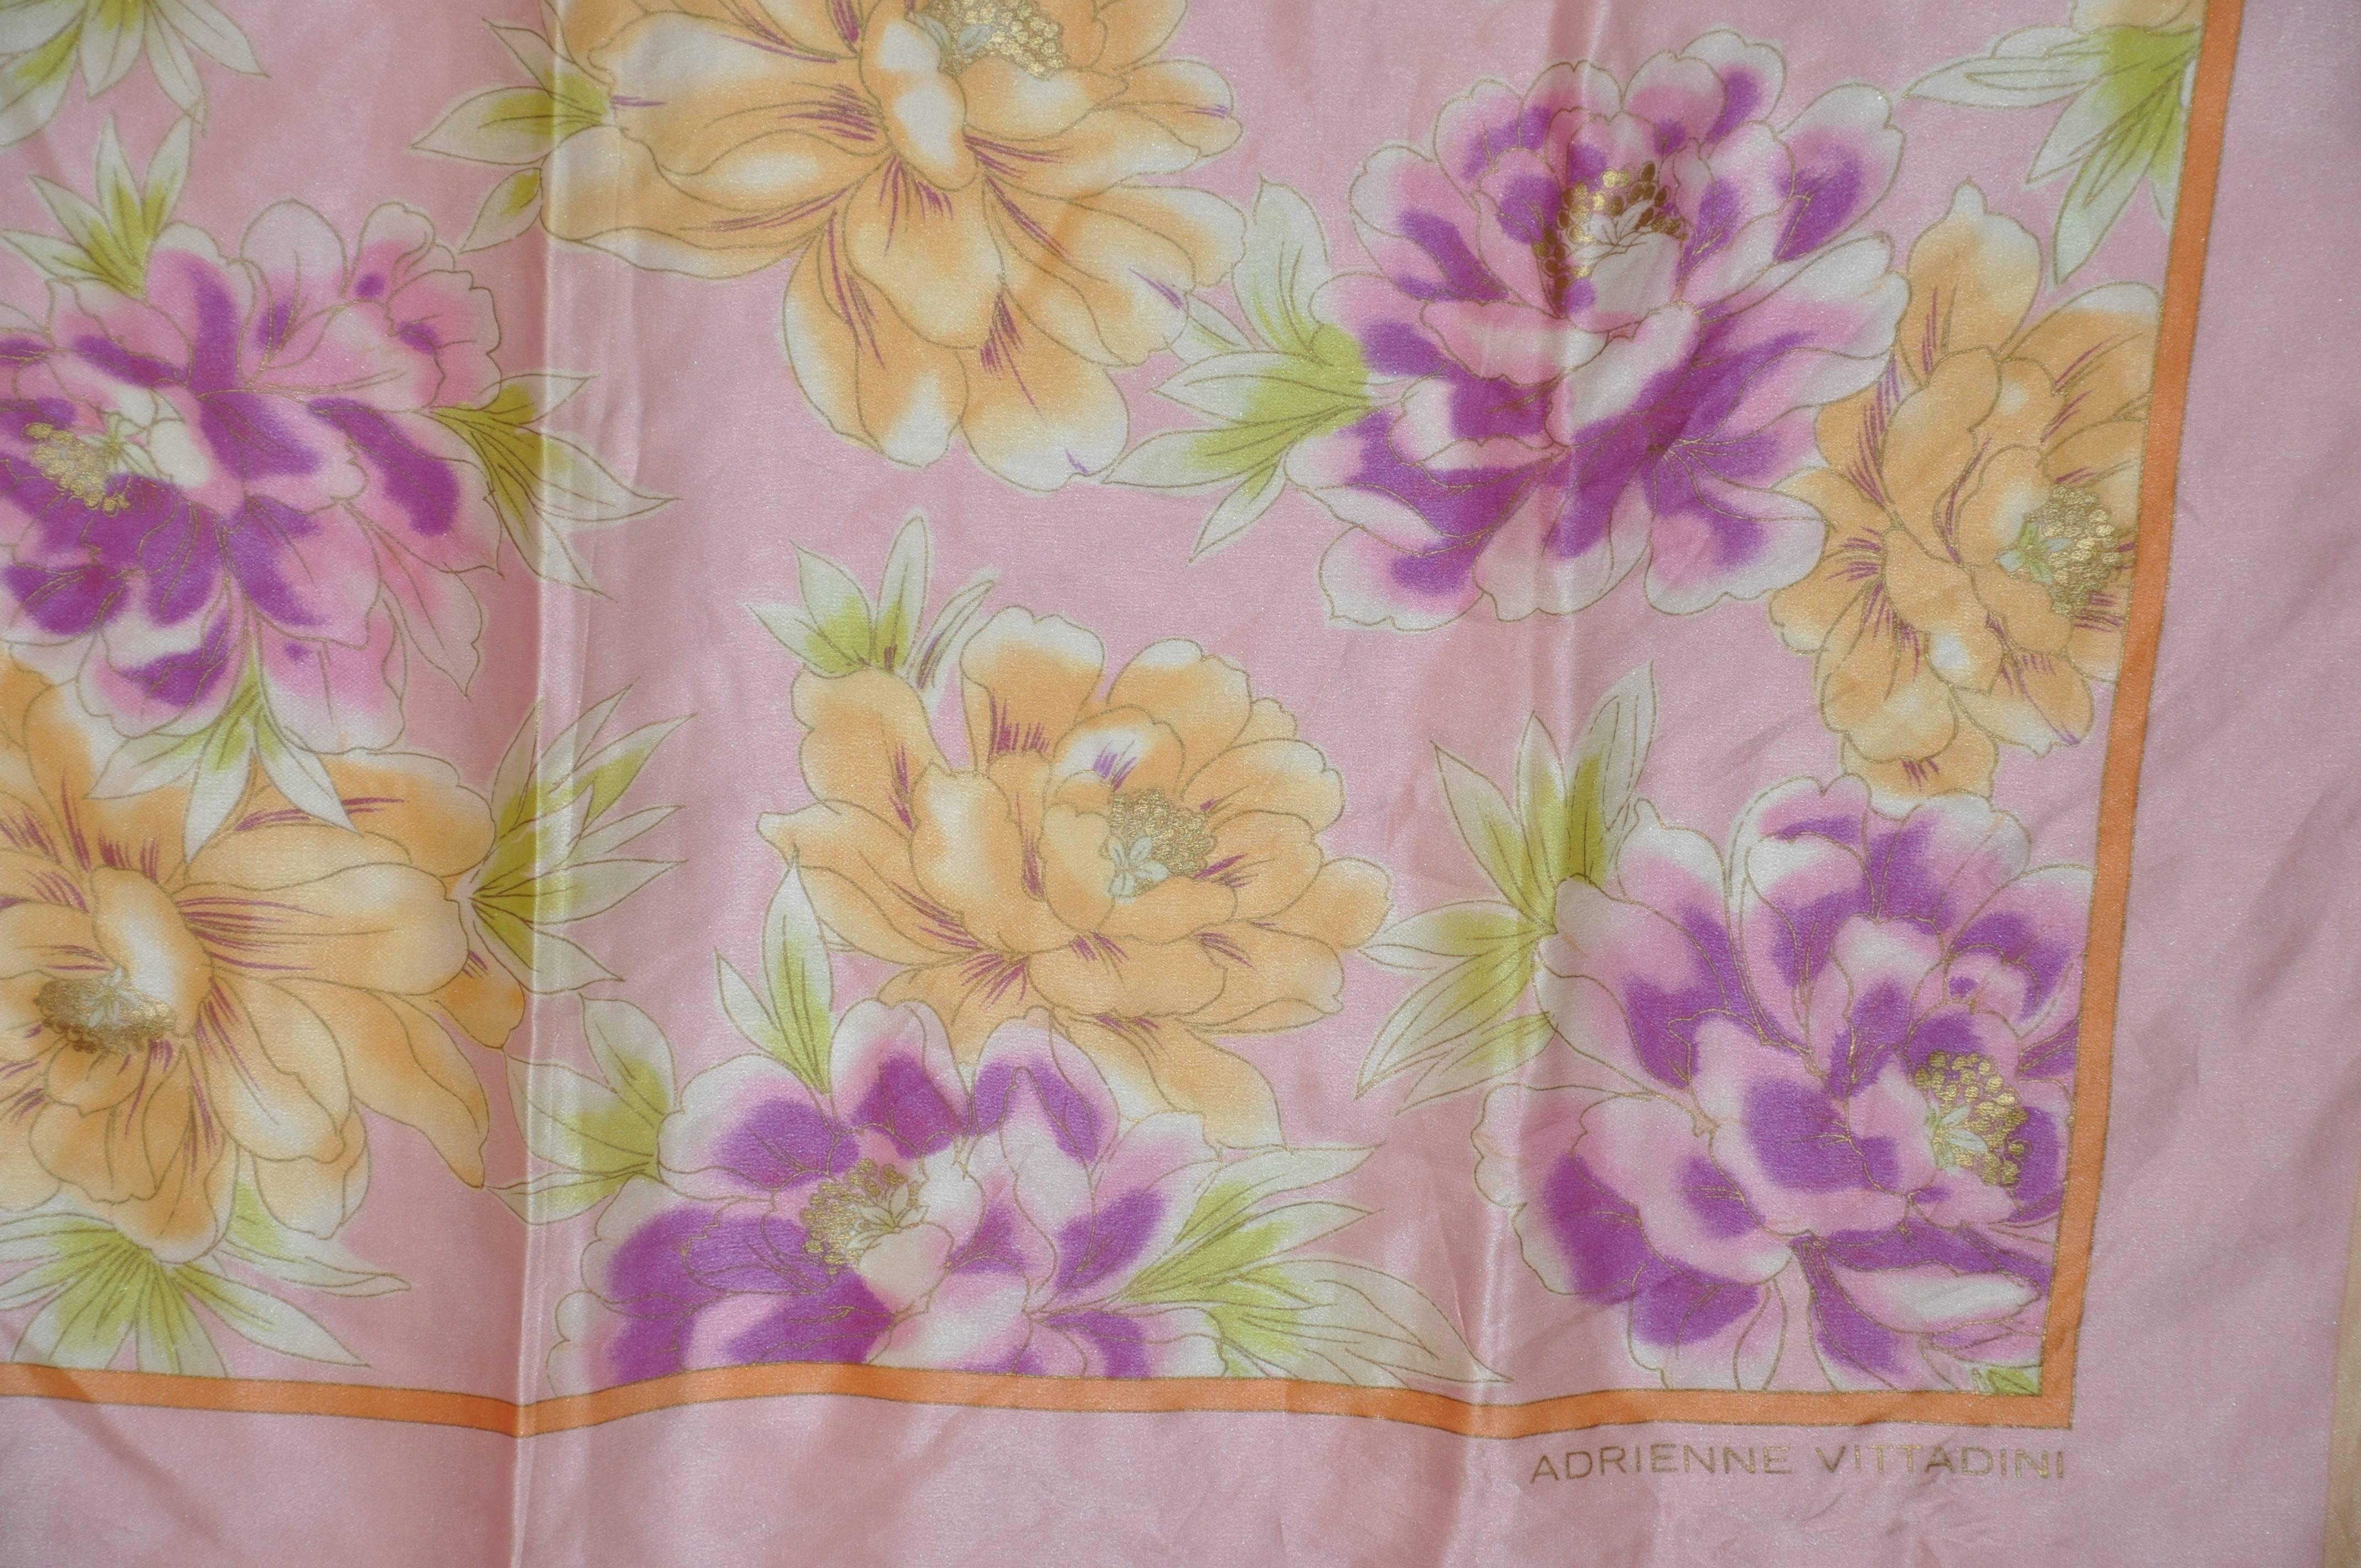         Adrienne Vittadini wonderfully elegant multi-color floral silk scarf measures 34